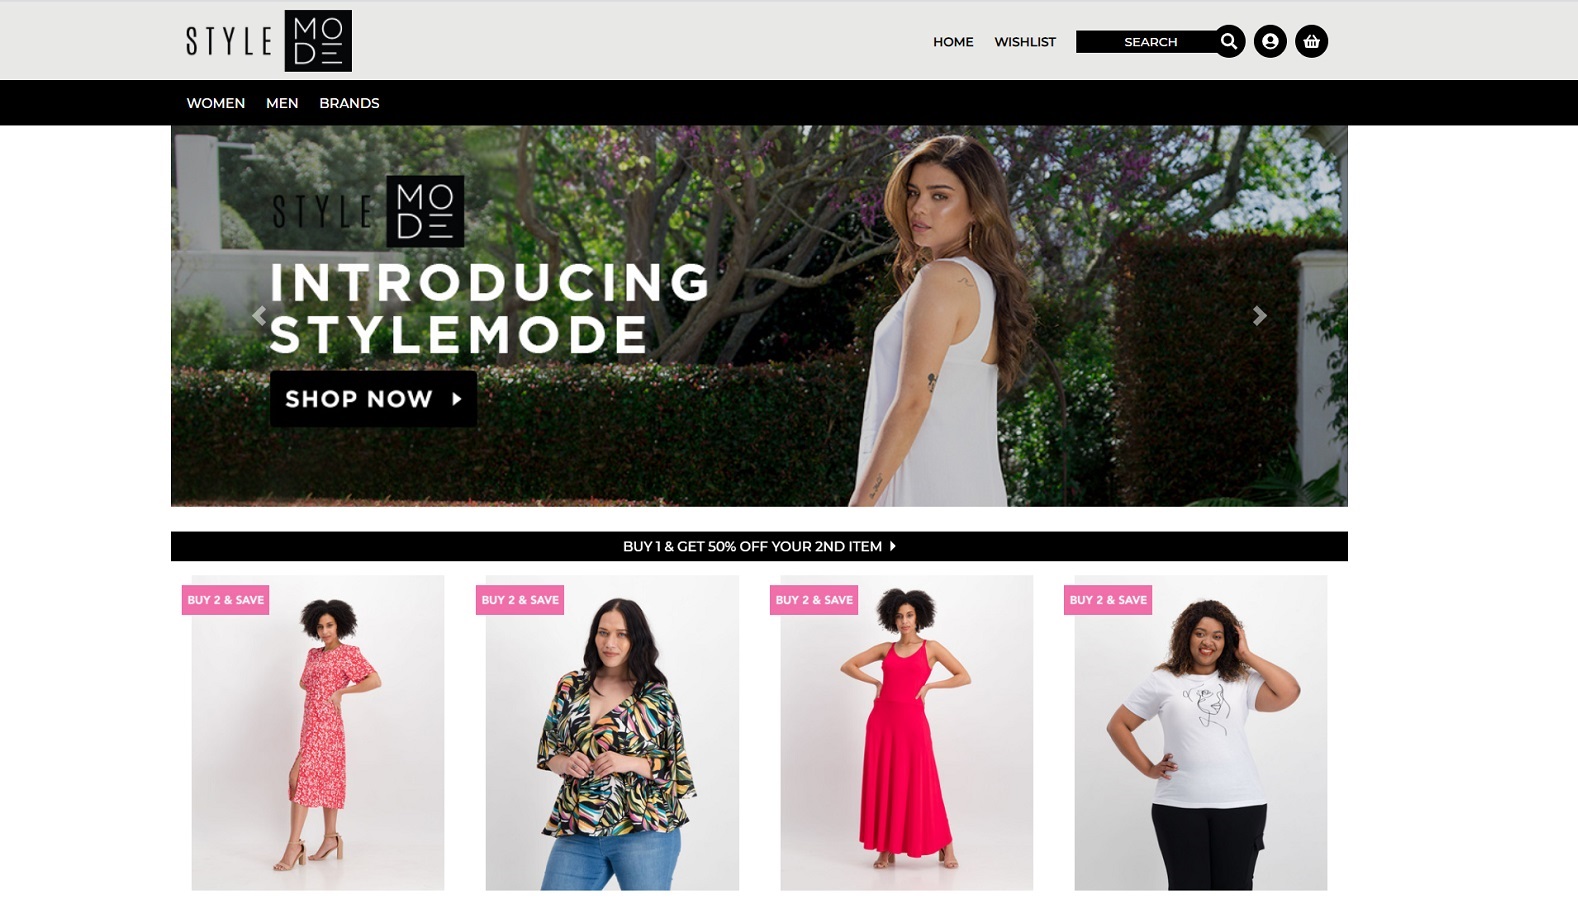 ik ben gelukkig met tijd Evalueerbaar New online fashion shopping site launches in South Africa - Memeburn